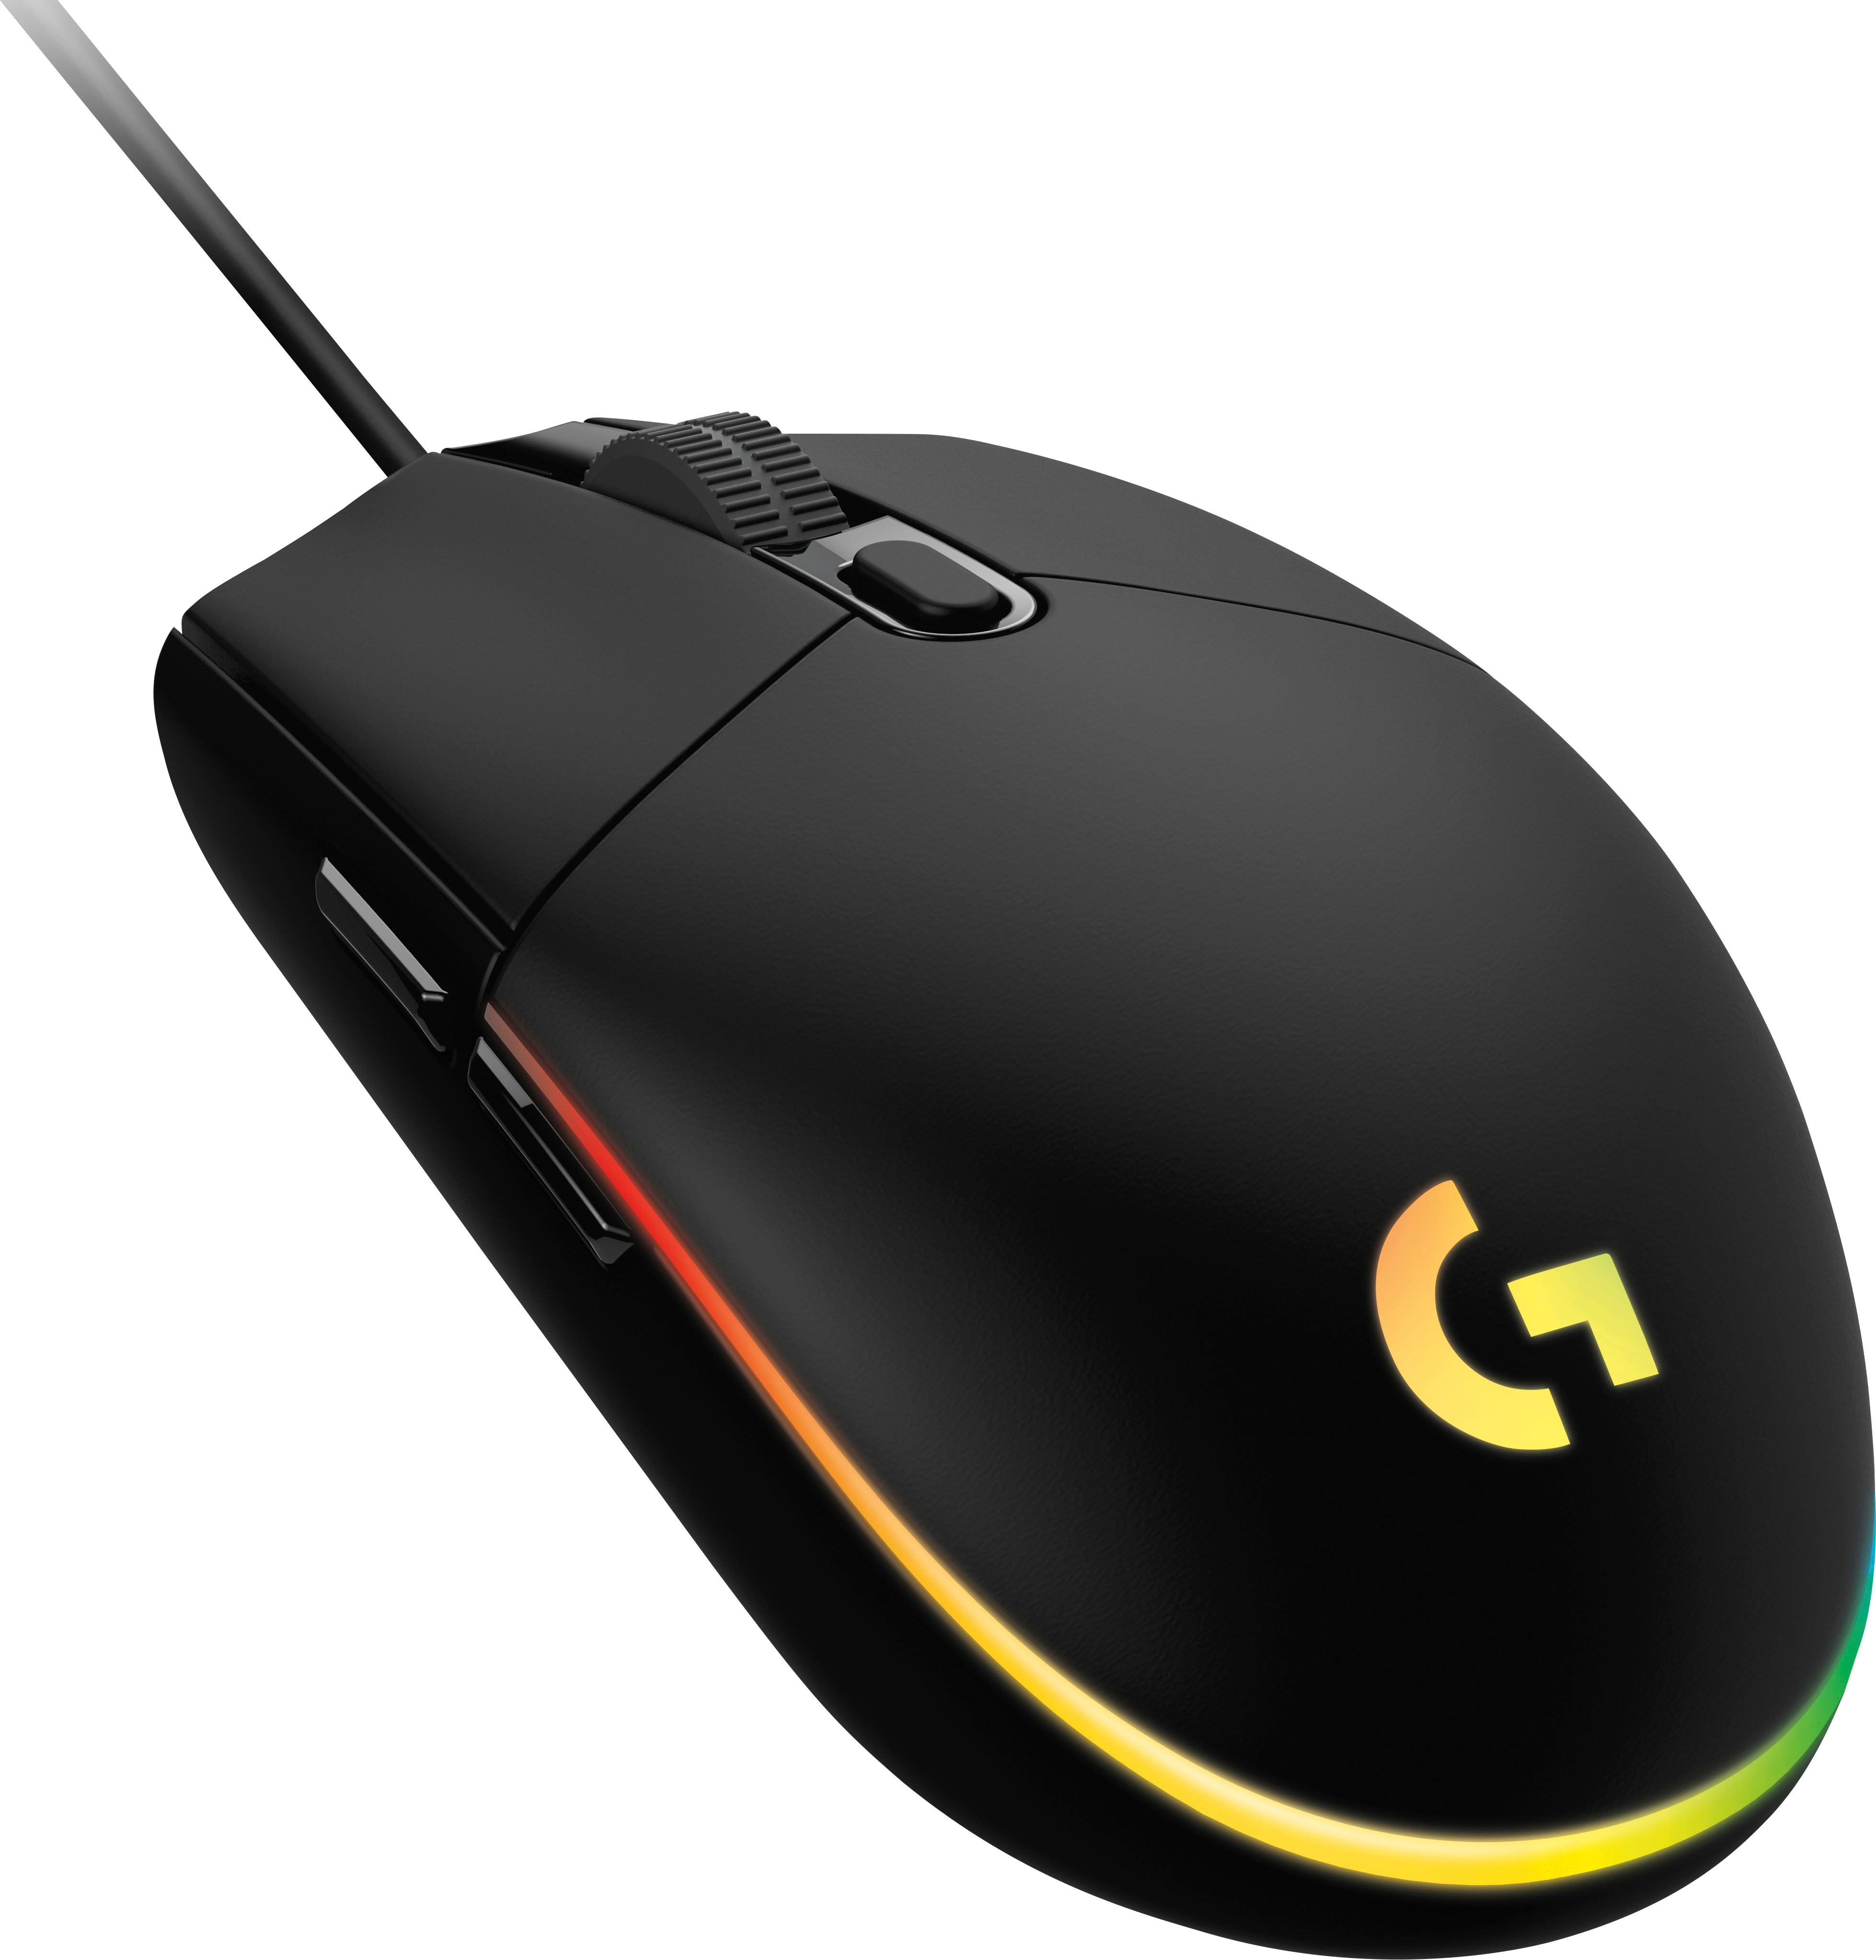 Logitech G203 LIGHTSYNC Gaming Mouse 8,000 DPI sensor Black 910-005790 - Best Buy